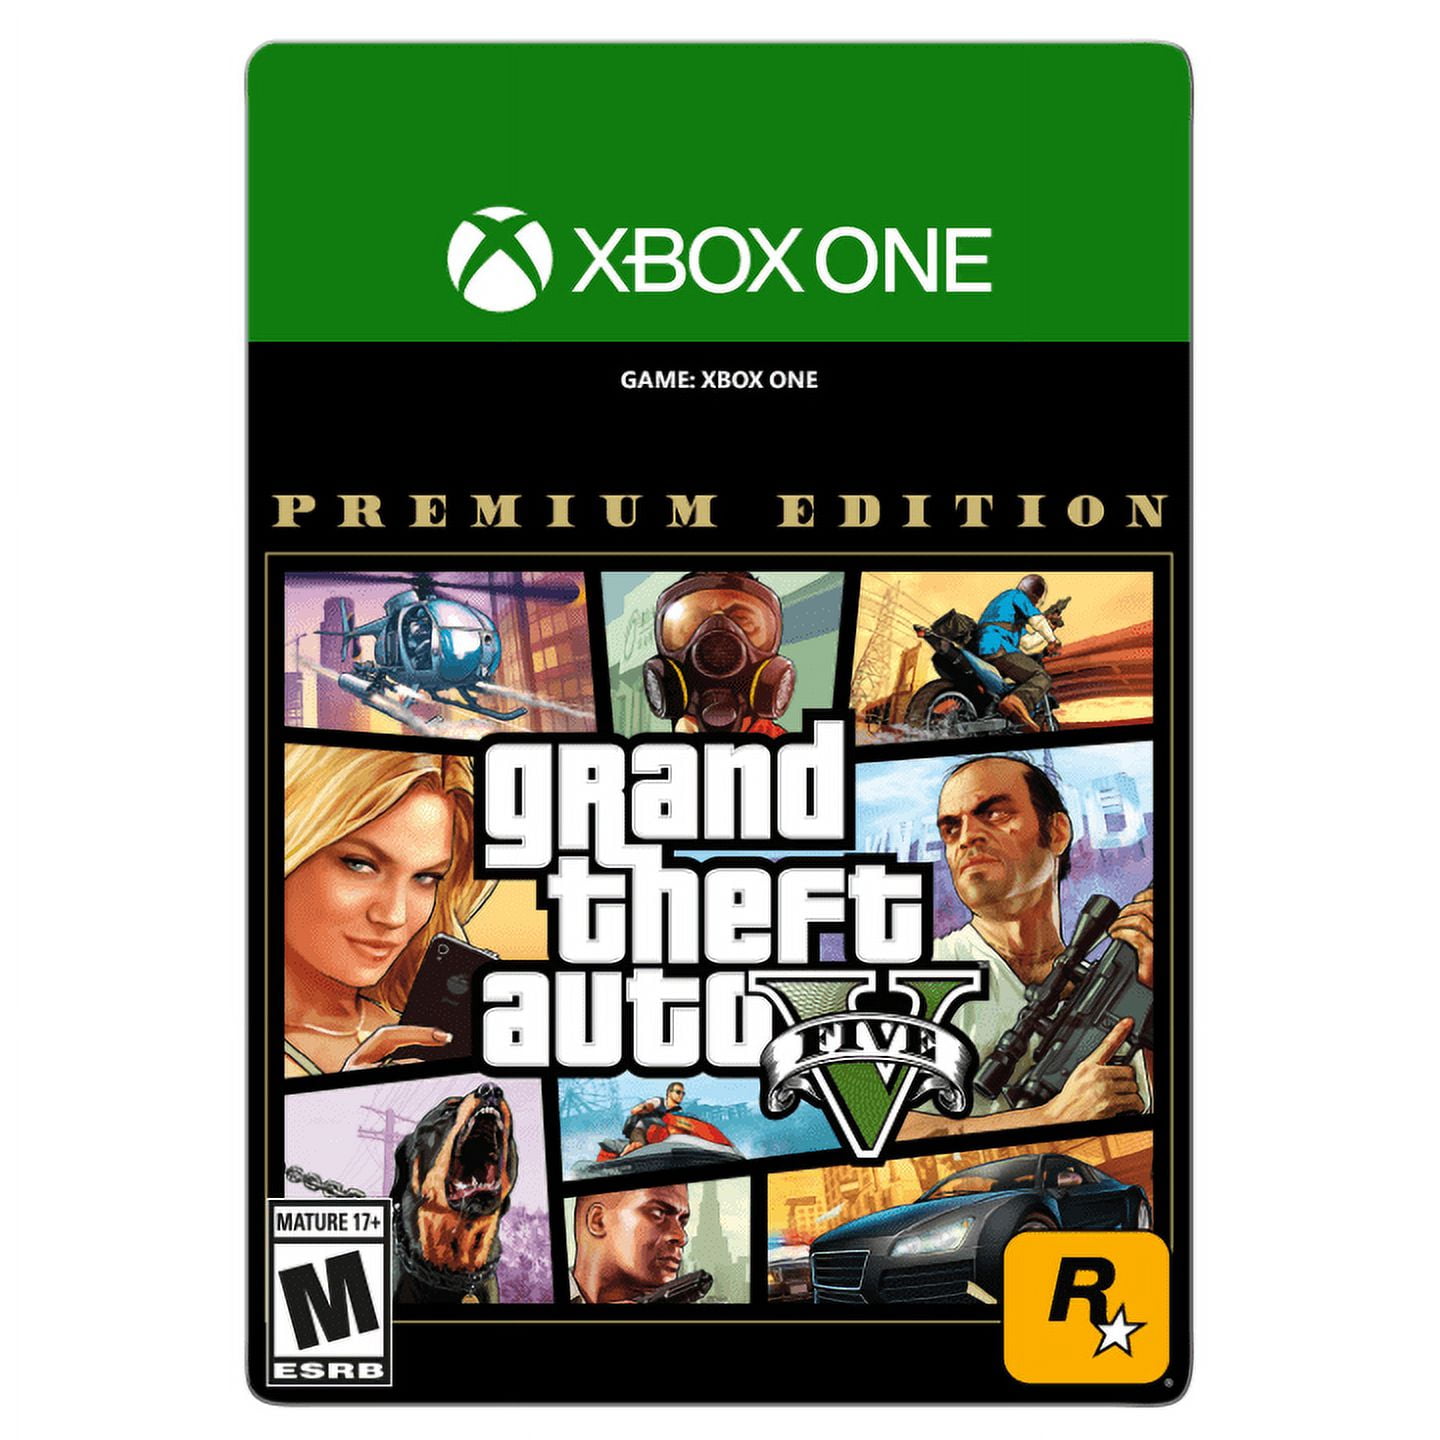 Grand Theft Auto V: Premium Online Edition (Rockstar) - Digital para  Download - Faz a Boa!